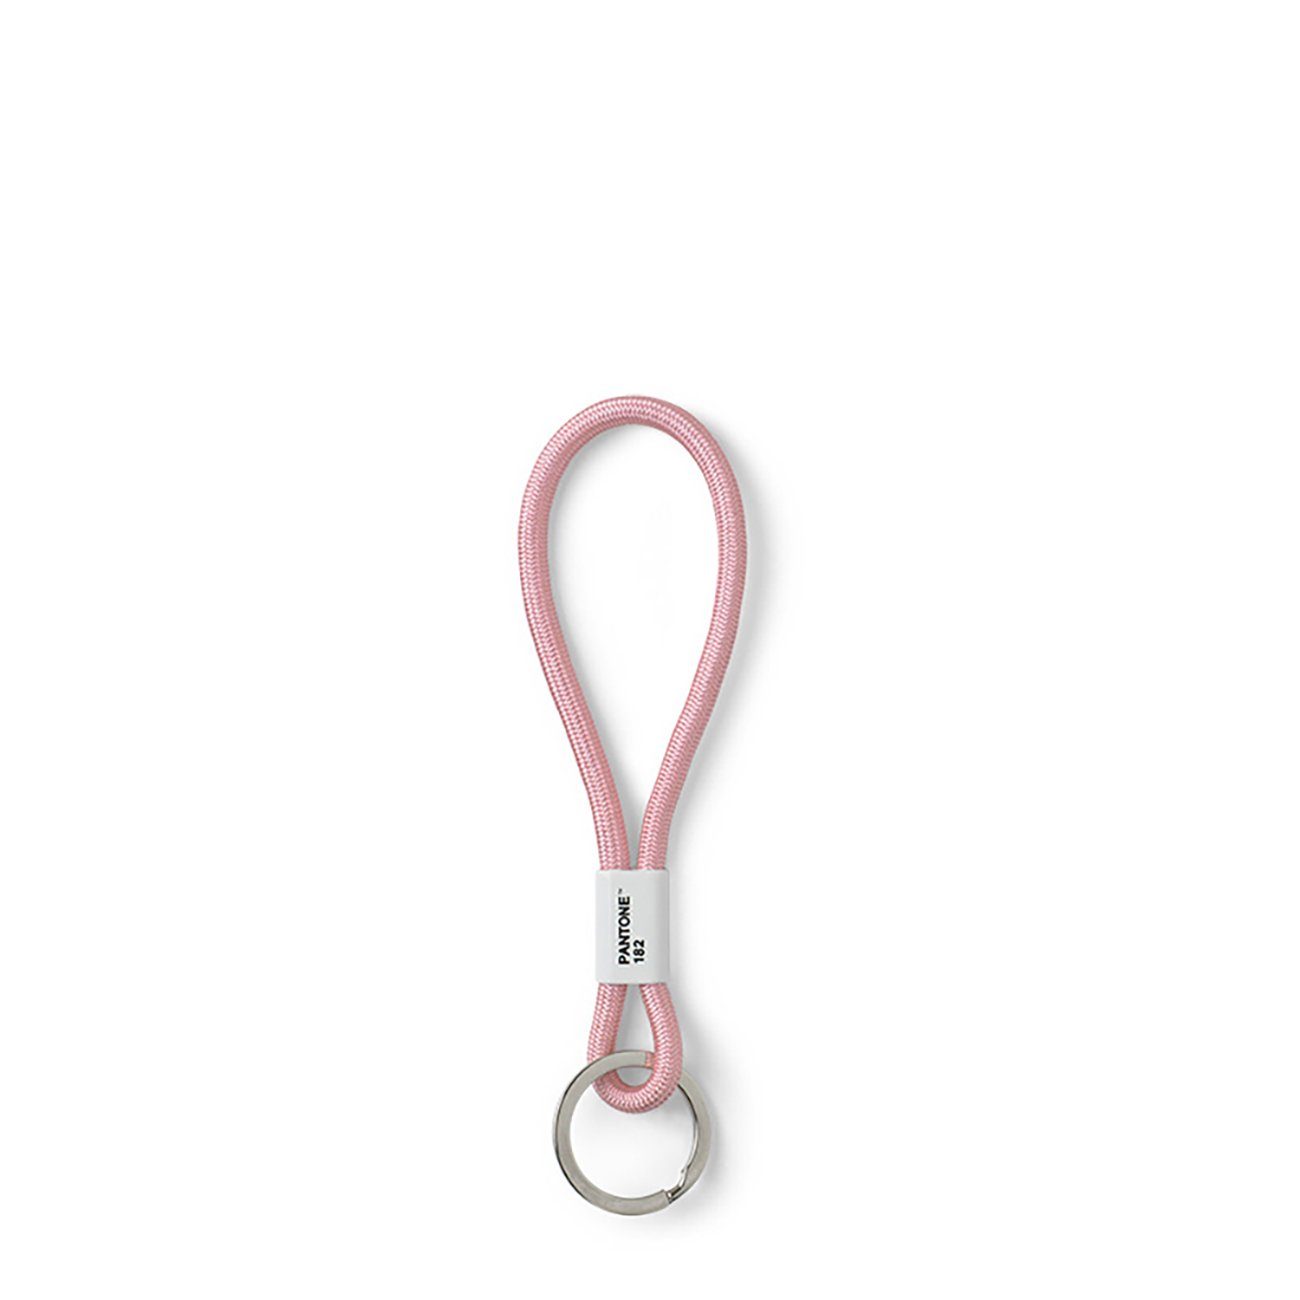 Light Schlüsselband, kurz Pink Chain, Schlüsselanhänger, Design- PANTONE 182 Key